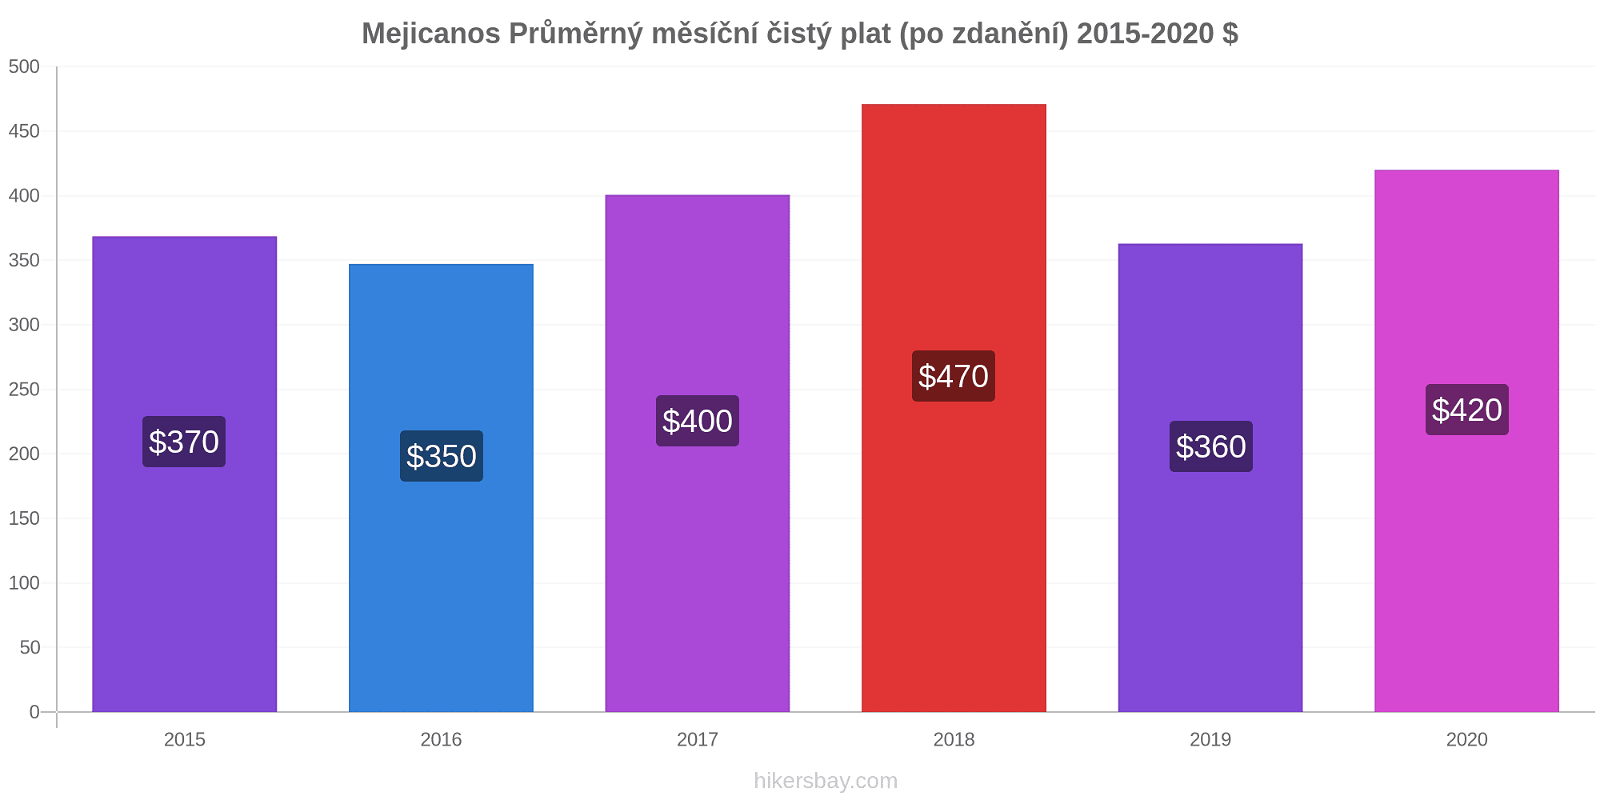 Mejicanos změny cen Průměrný měsíční čistý plat (po zdanění) hikersbay.com